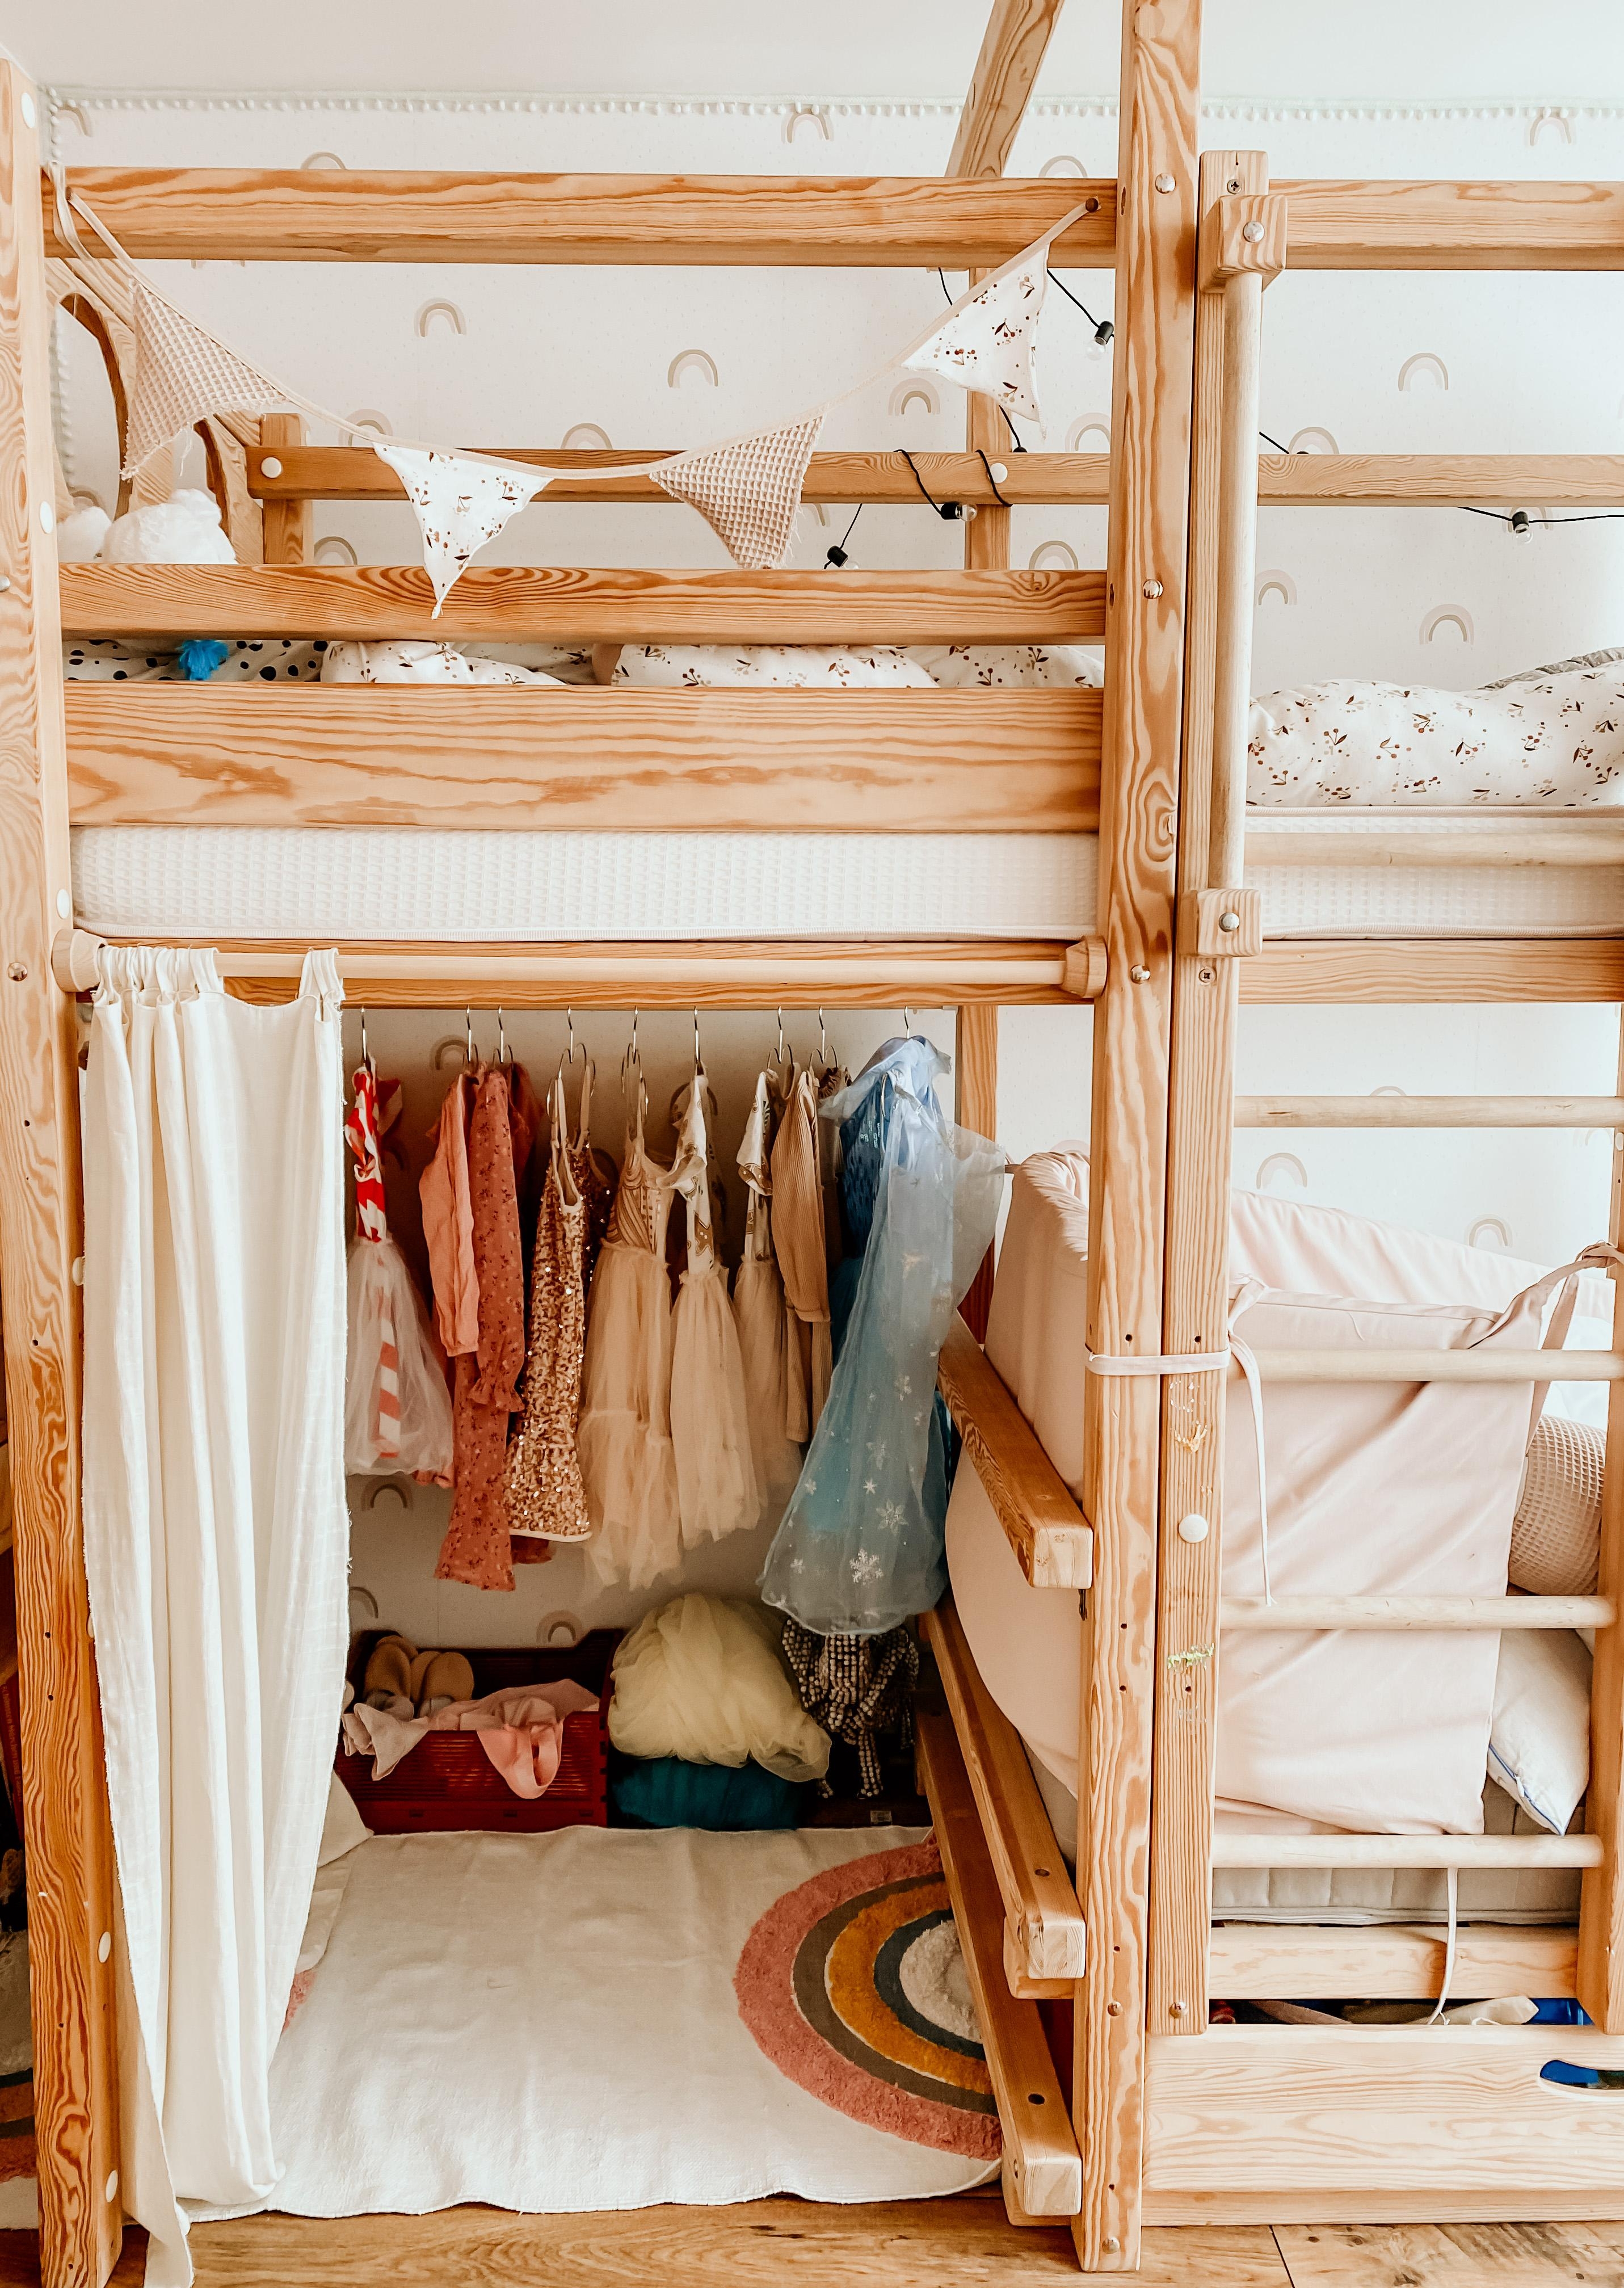 Abenteuerbett für Mädchen mit Tüll, Tüll und mehr Tüll #walkincloset #ankleideraum #diy #gebraucht #nachhaltig 